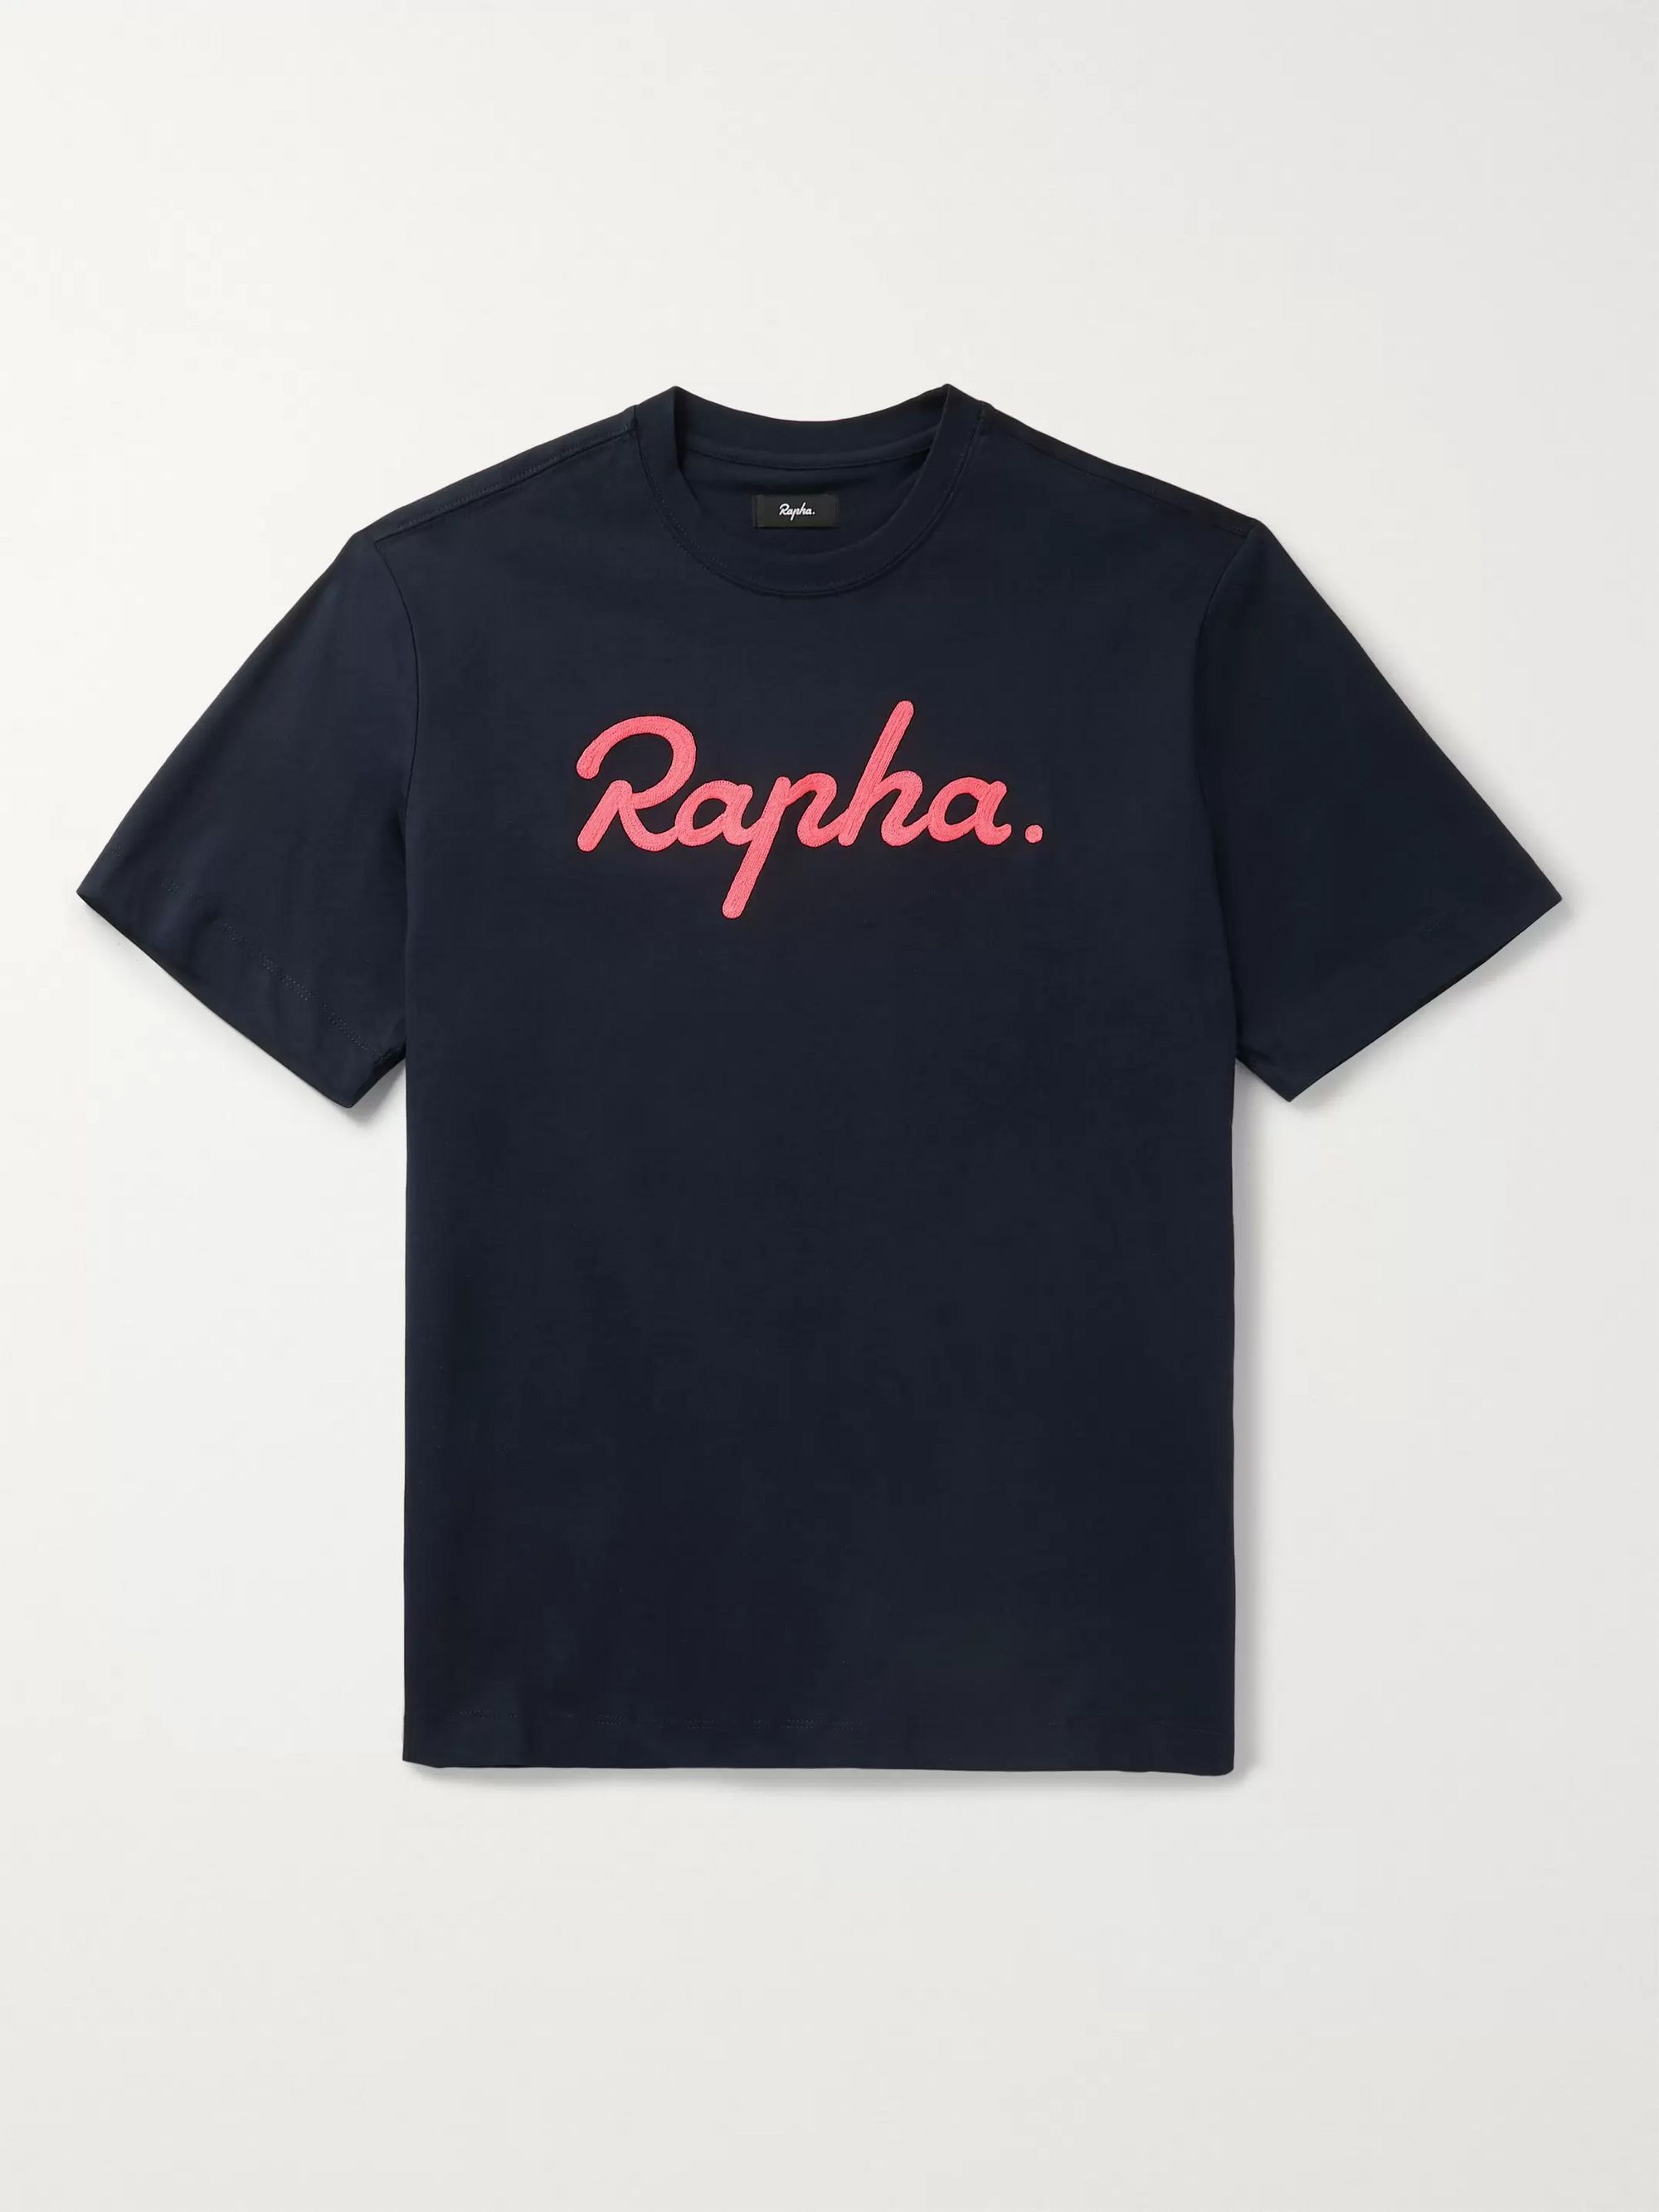 rapha cycling shirt